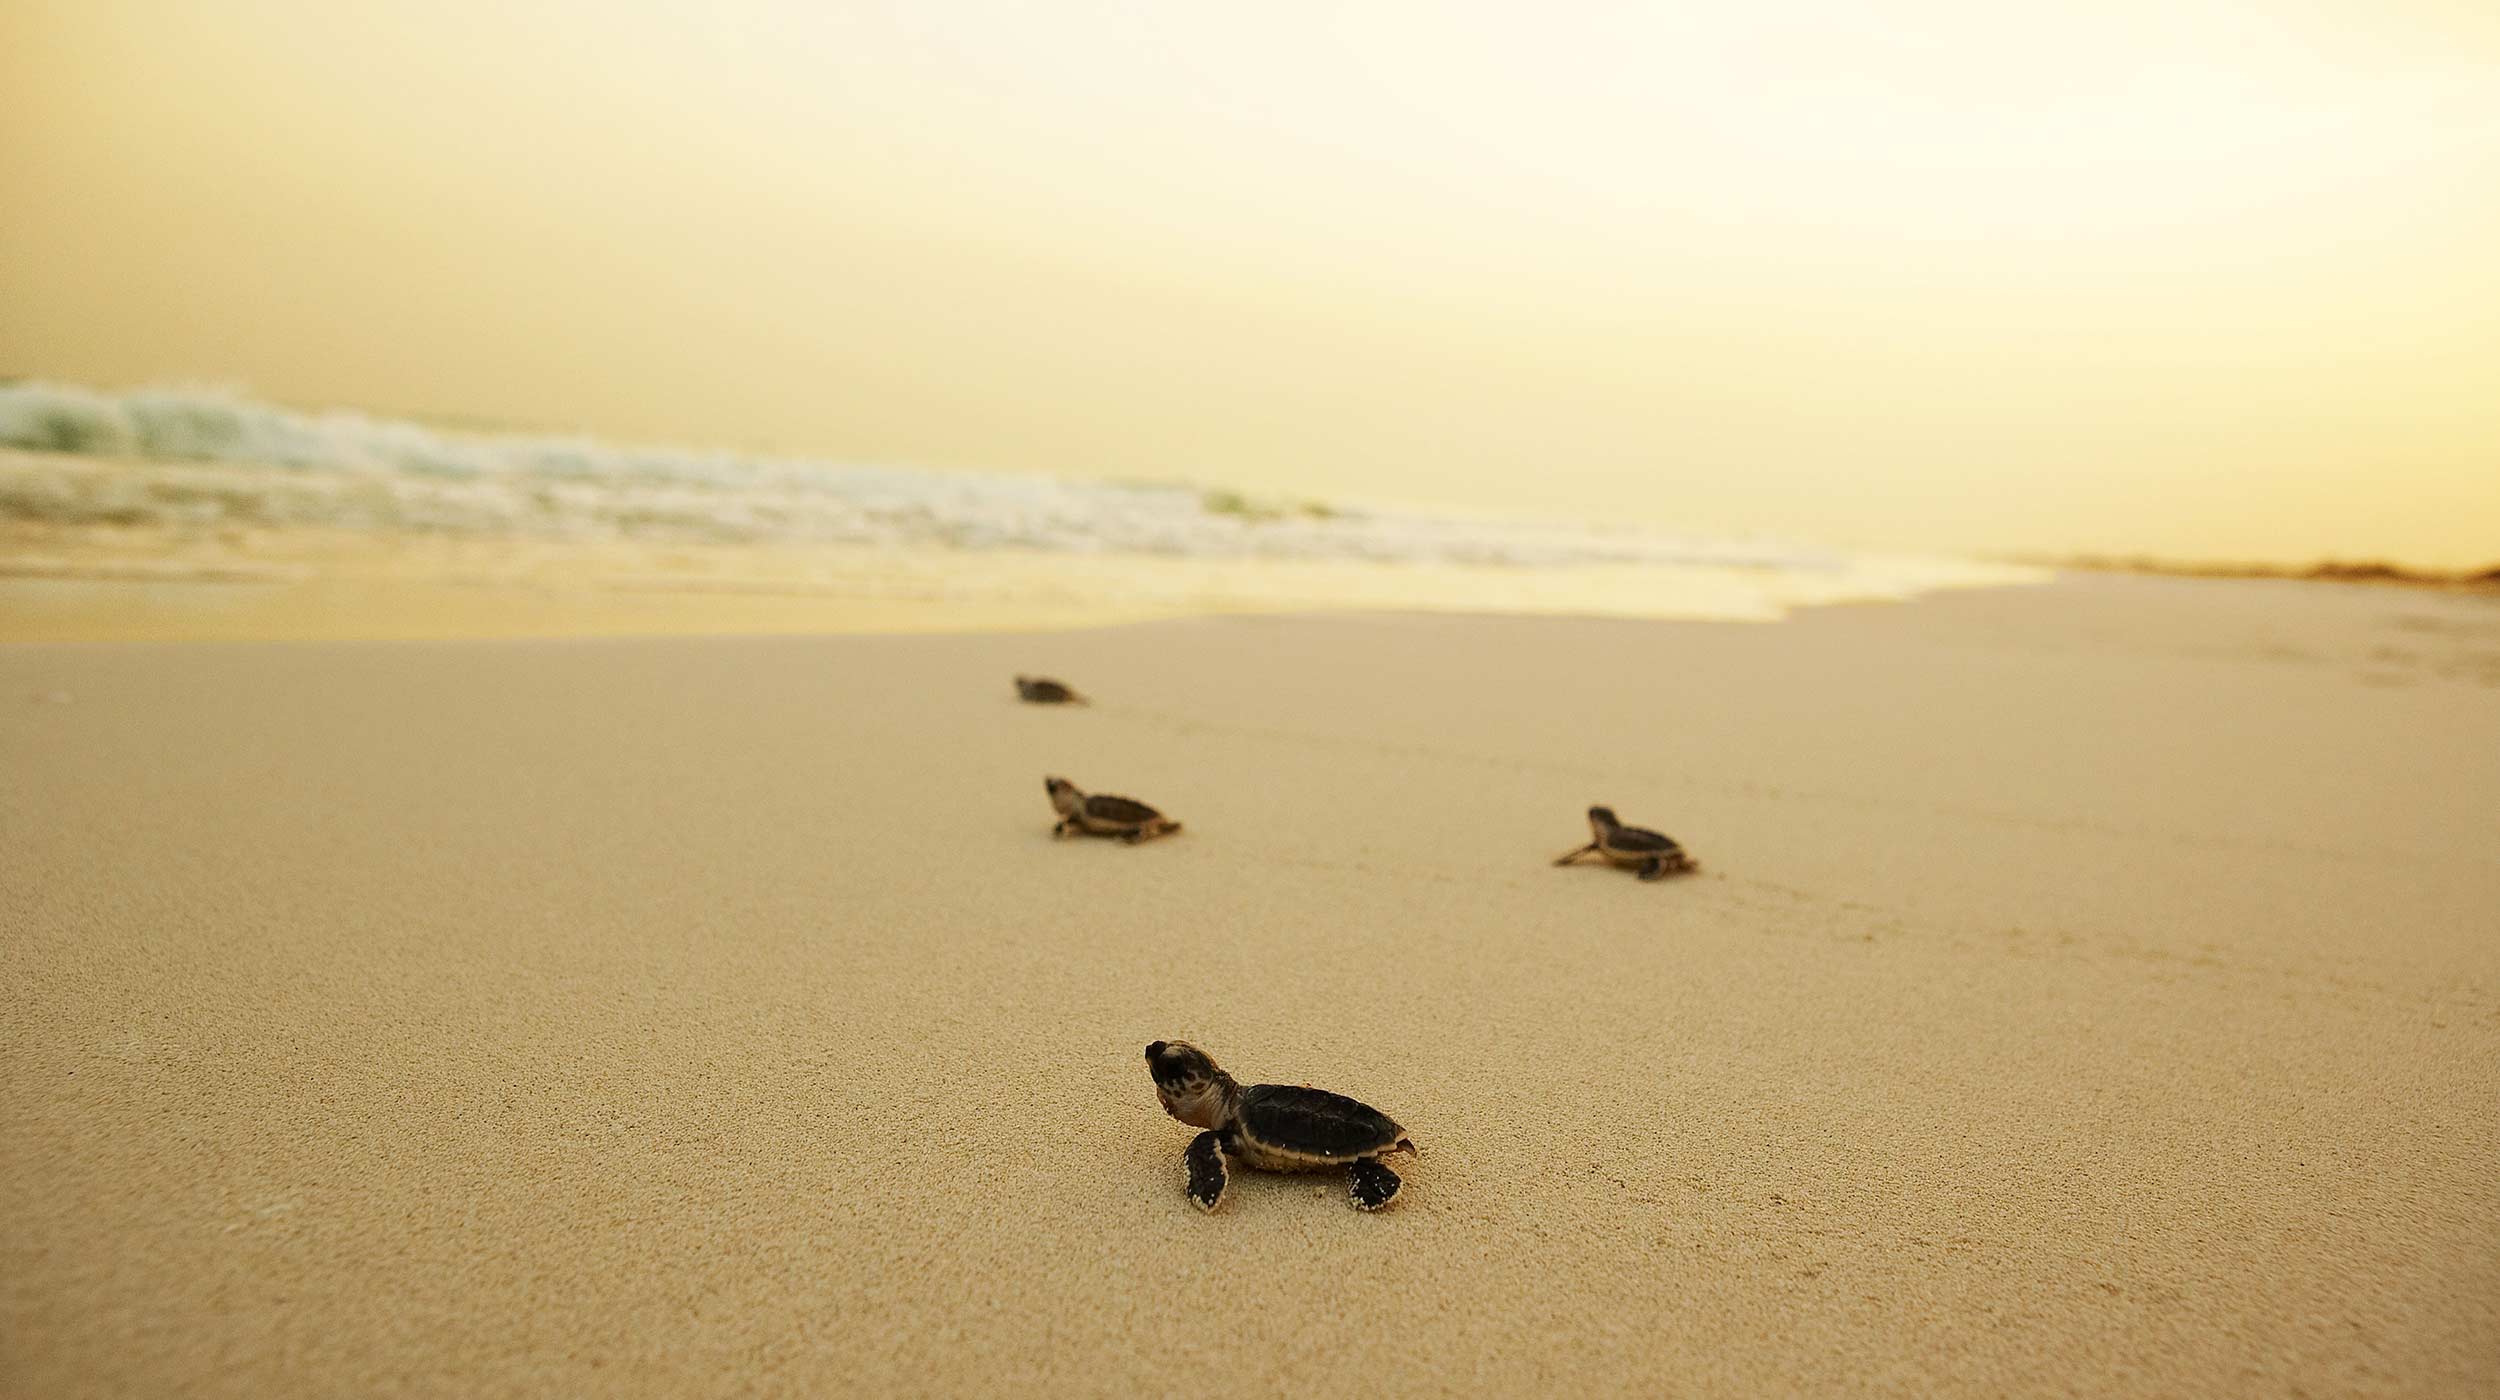 Magnifique coucher de soleil sur la côte de l'île Saadiyat d'Abu Dhabi remplie de tortues dans la nature.